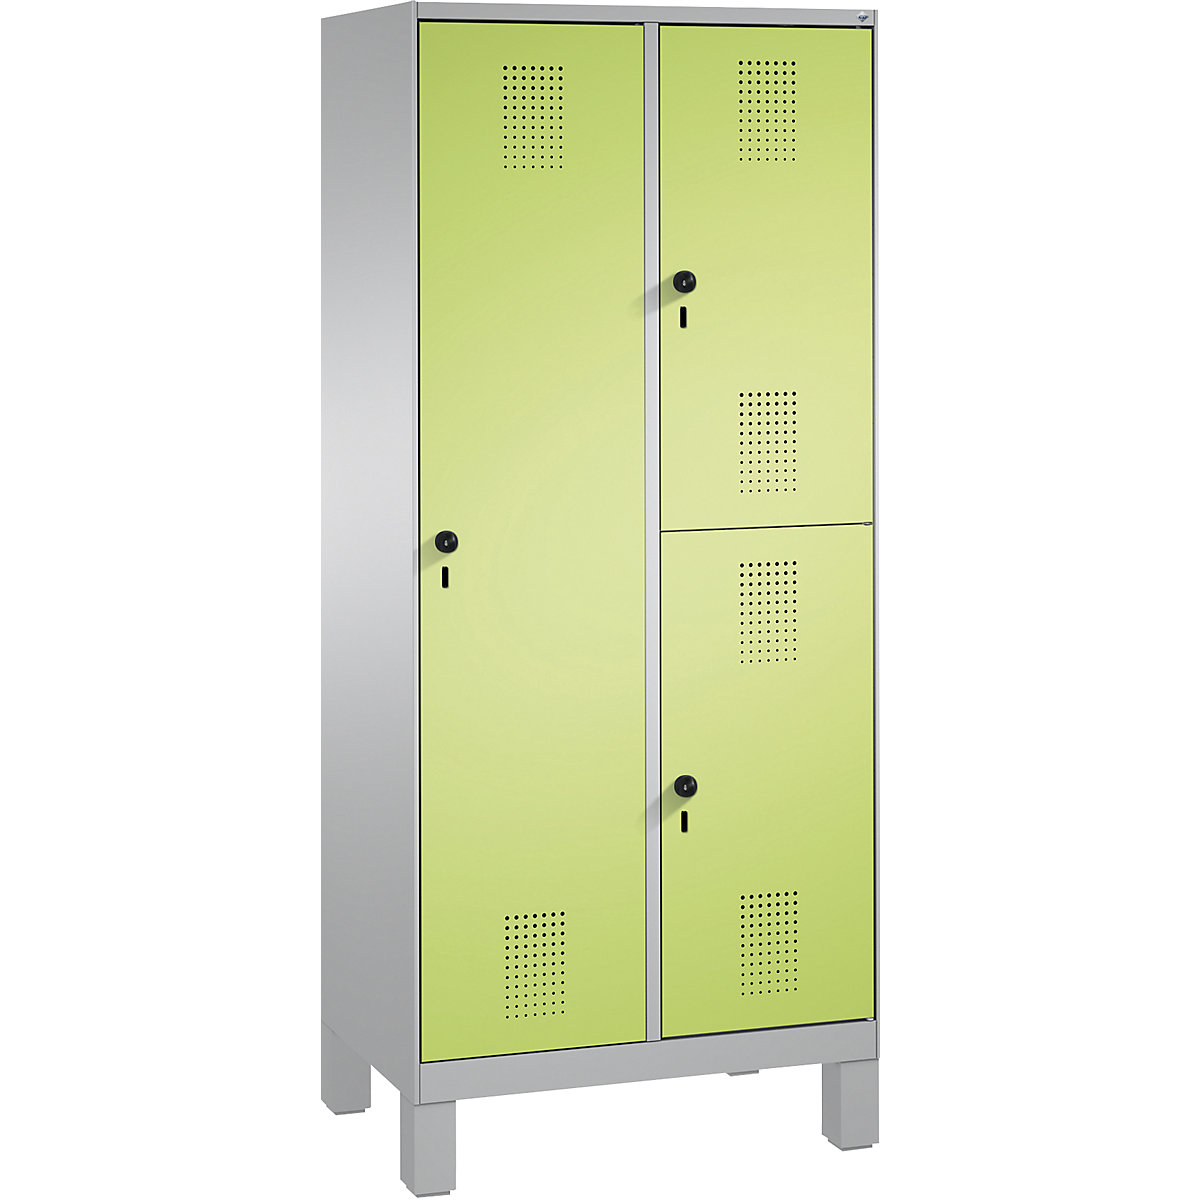 Kombinovaná skříň EVOLO, jednopatrová a dvoupatrová – C+P, 2 oddíly, 3 dveře, šířka oddílu 400 mm, s nohami, bílý hliník / viridianová zelená-8